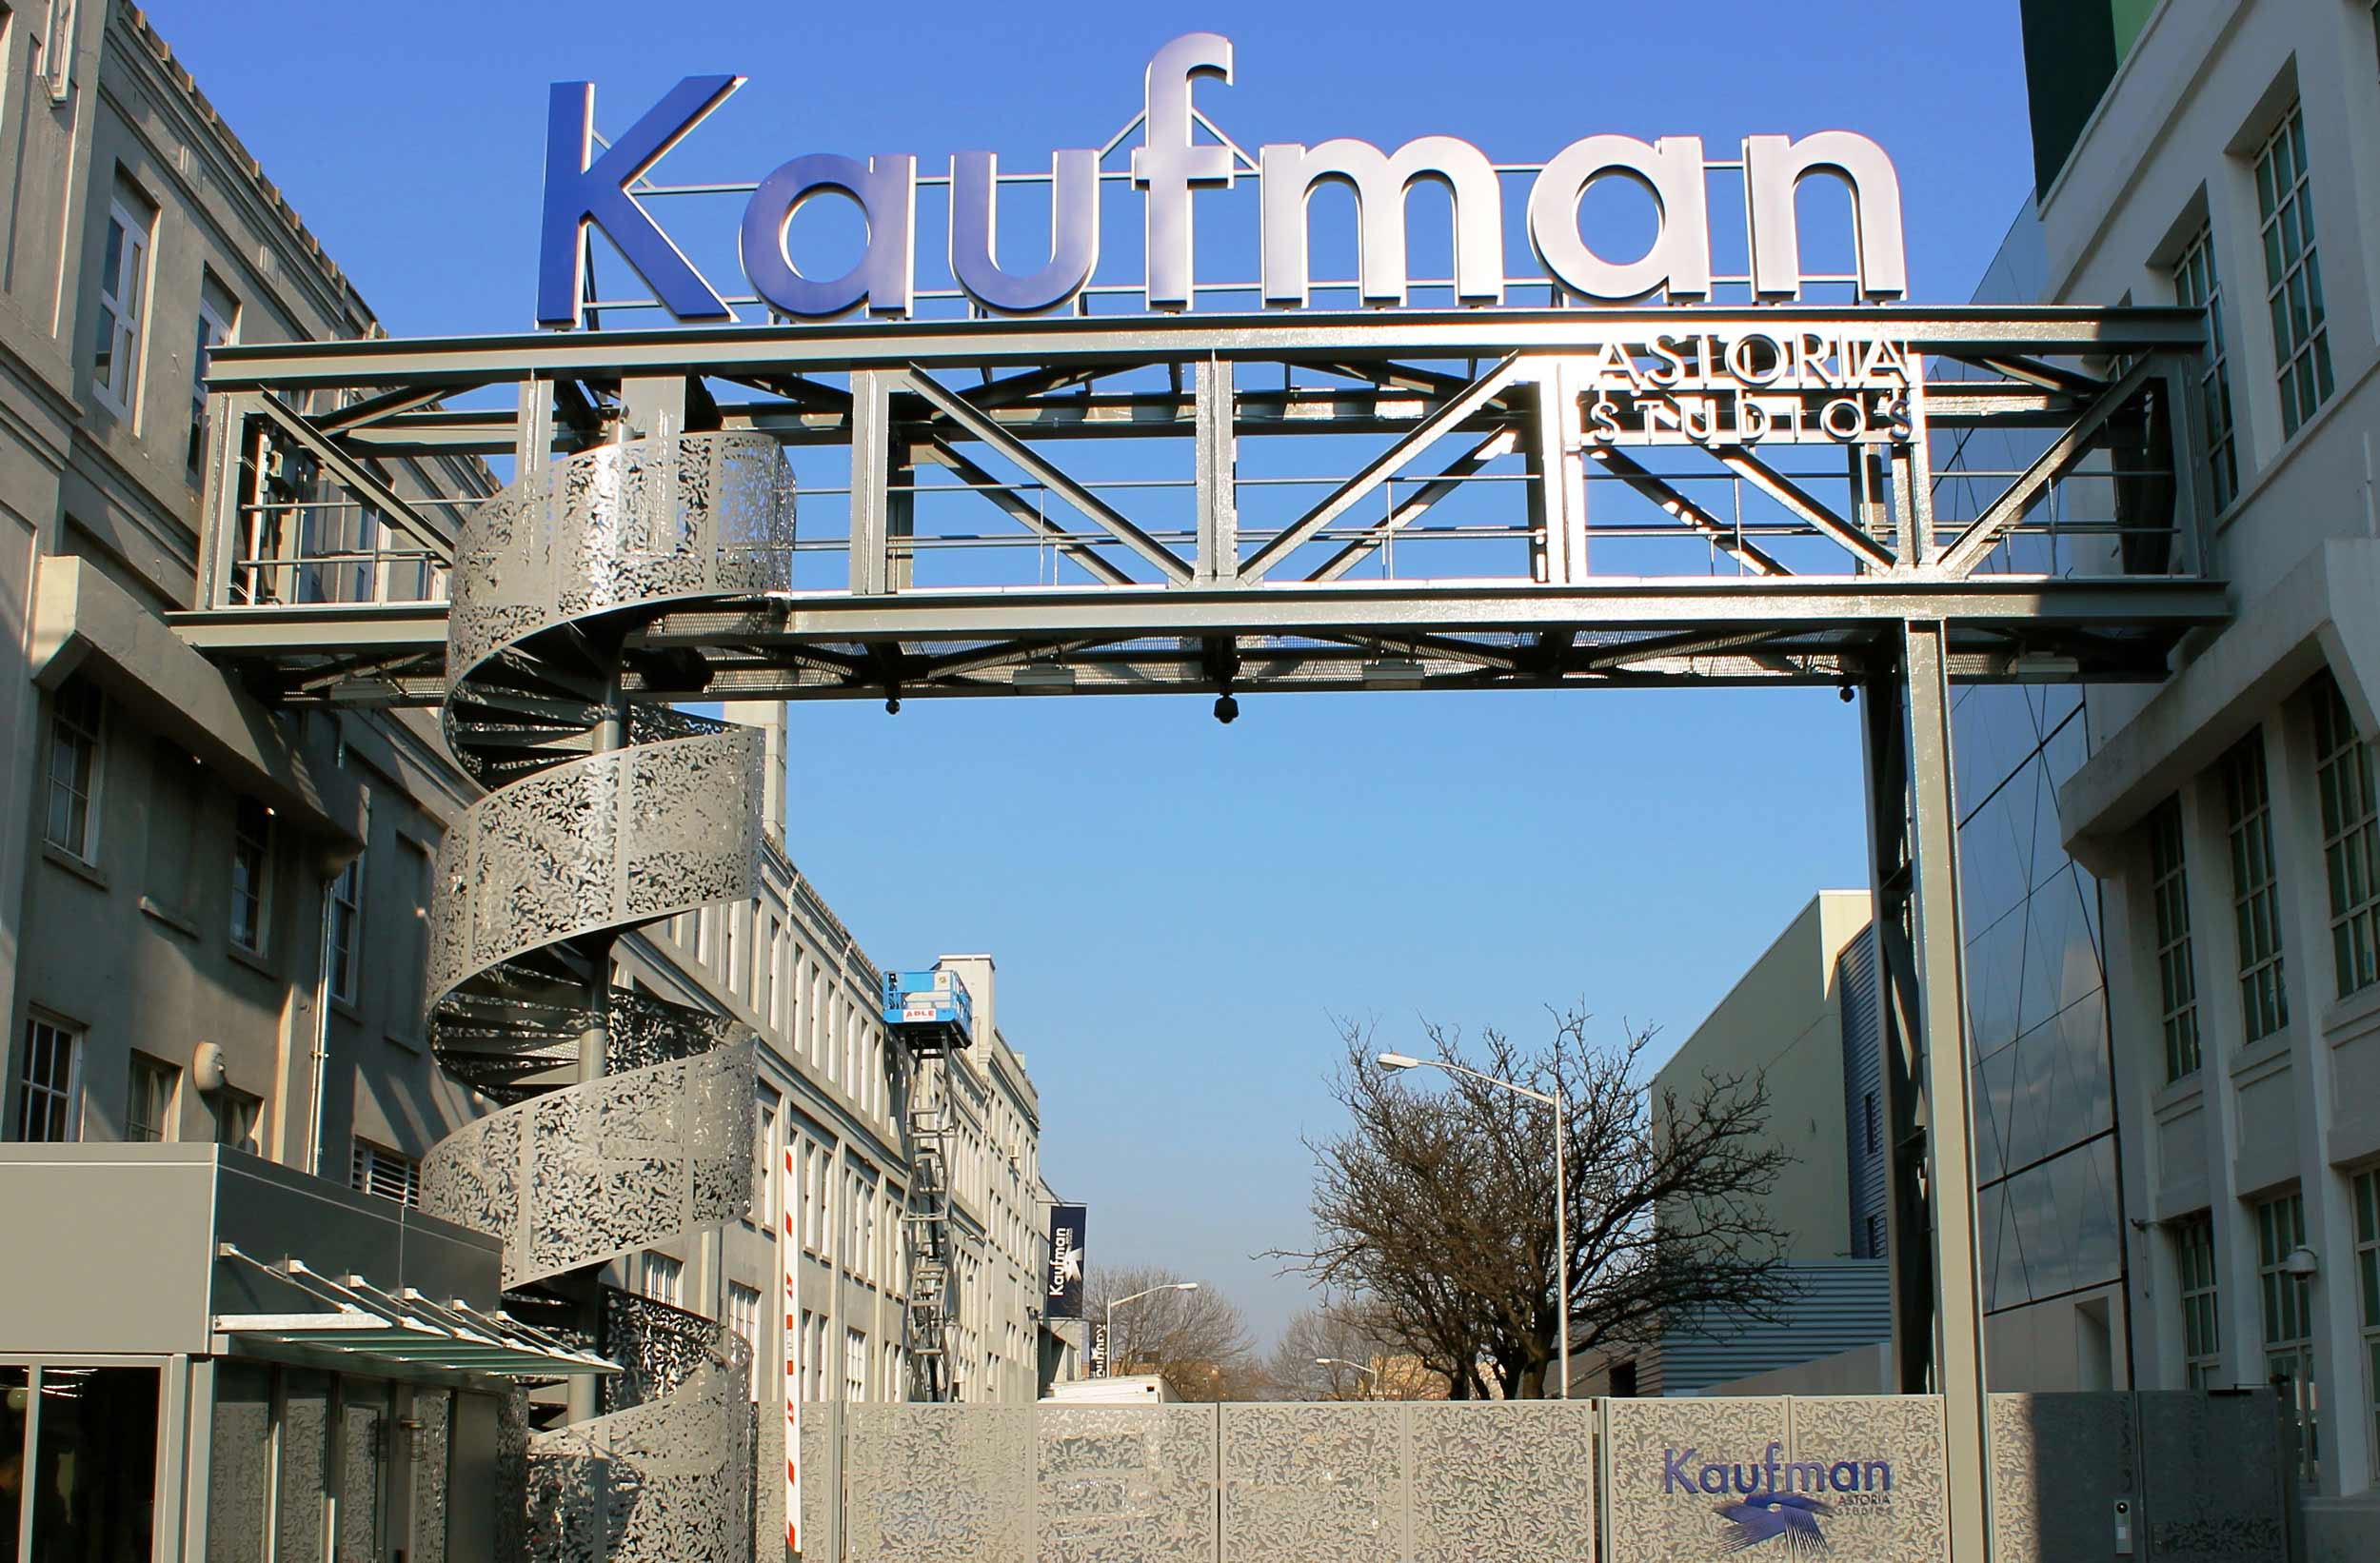 Kaufman Astoria Studios sign.